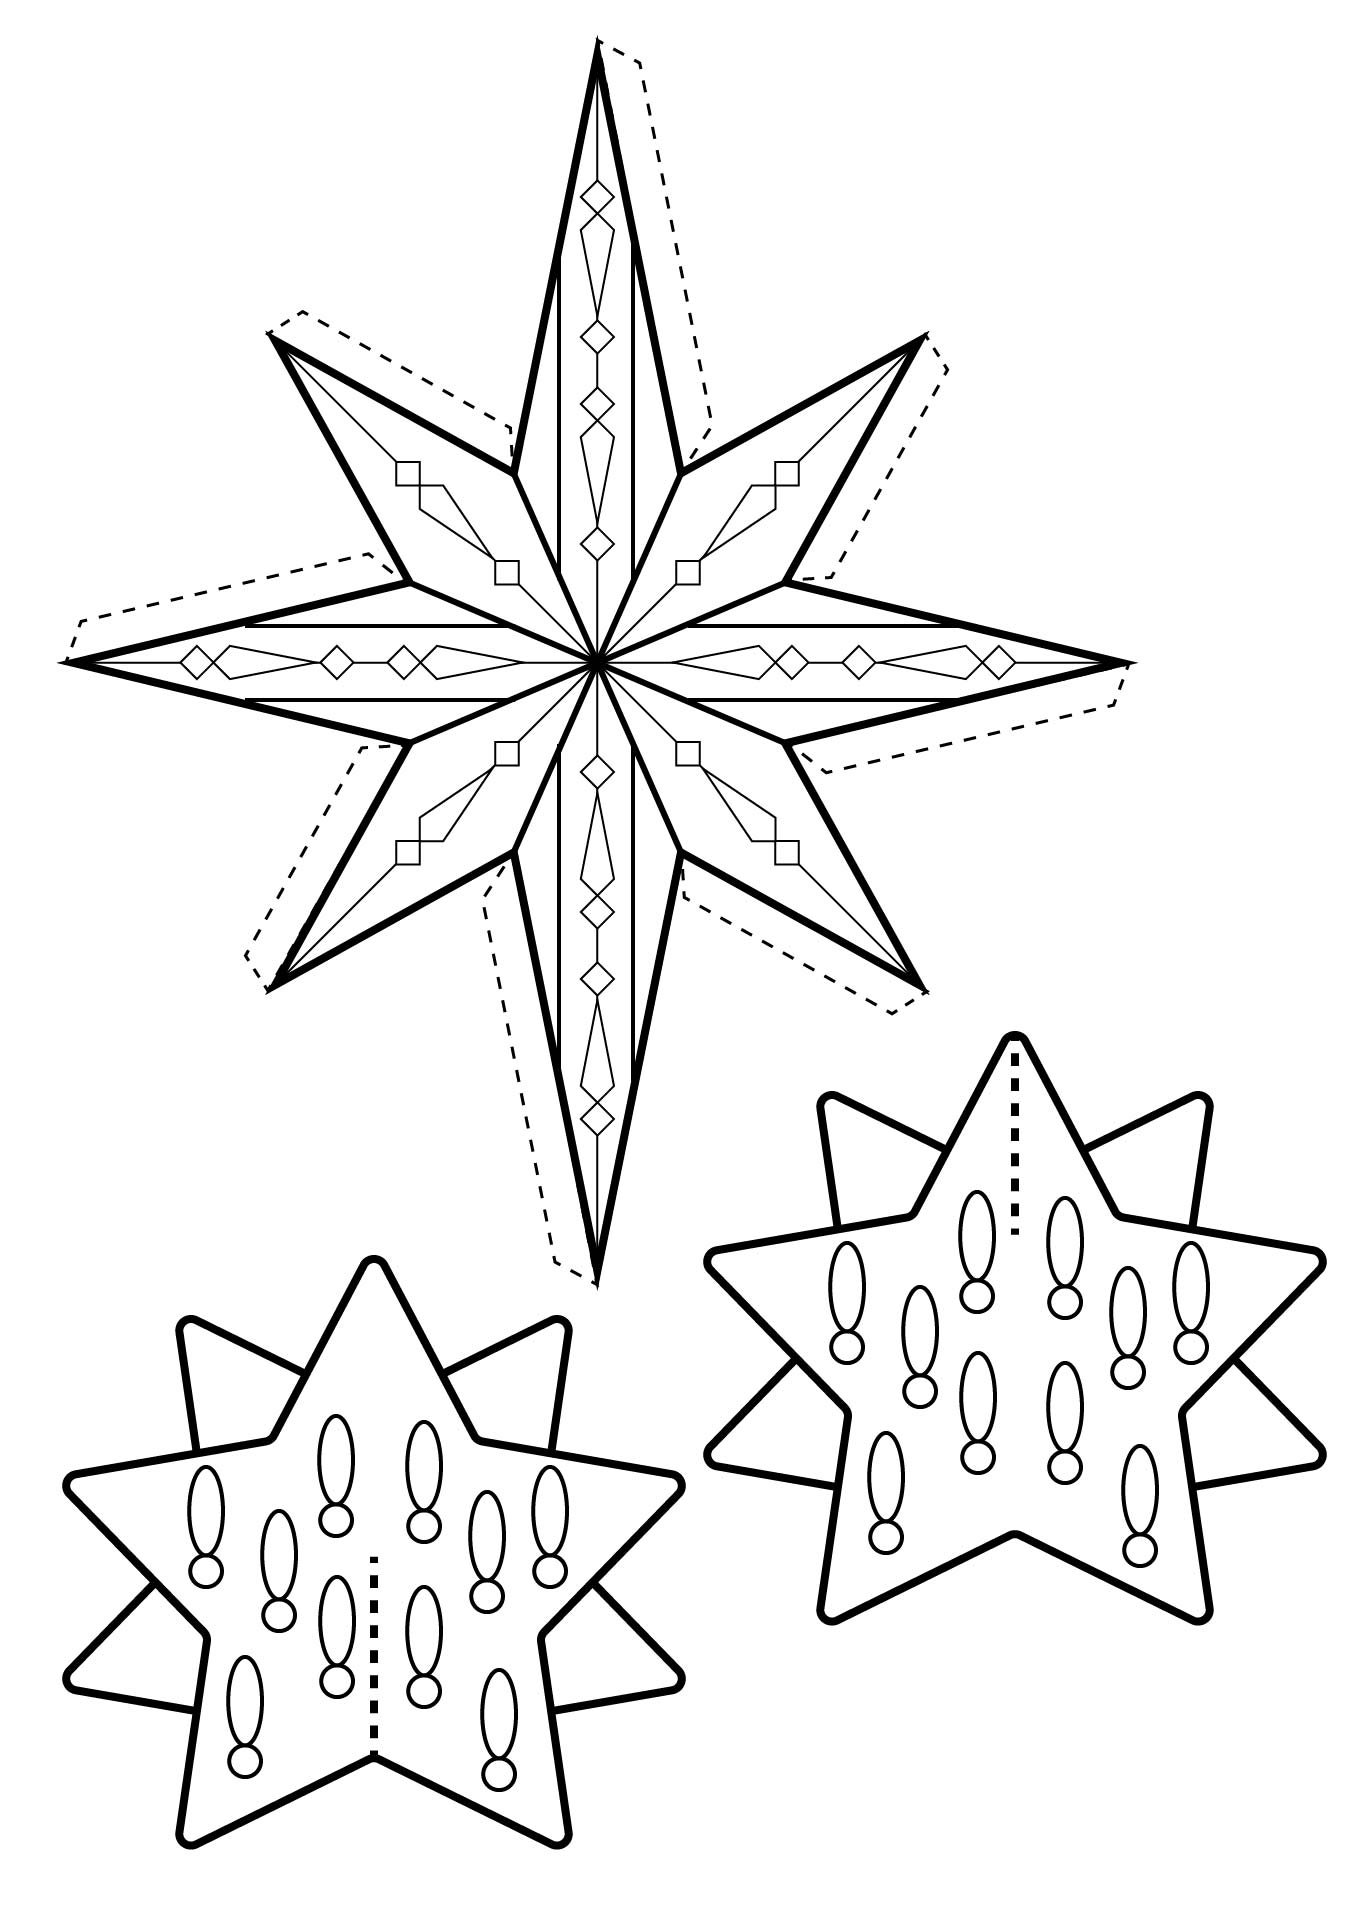 Easy To Make Christmas Star Decorations Printable